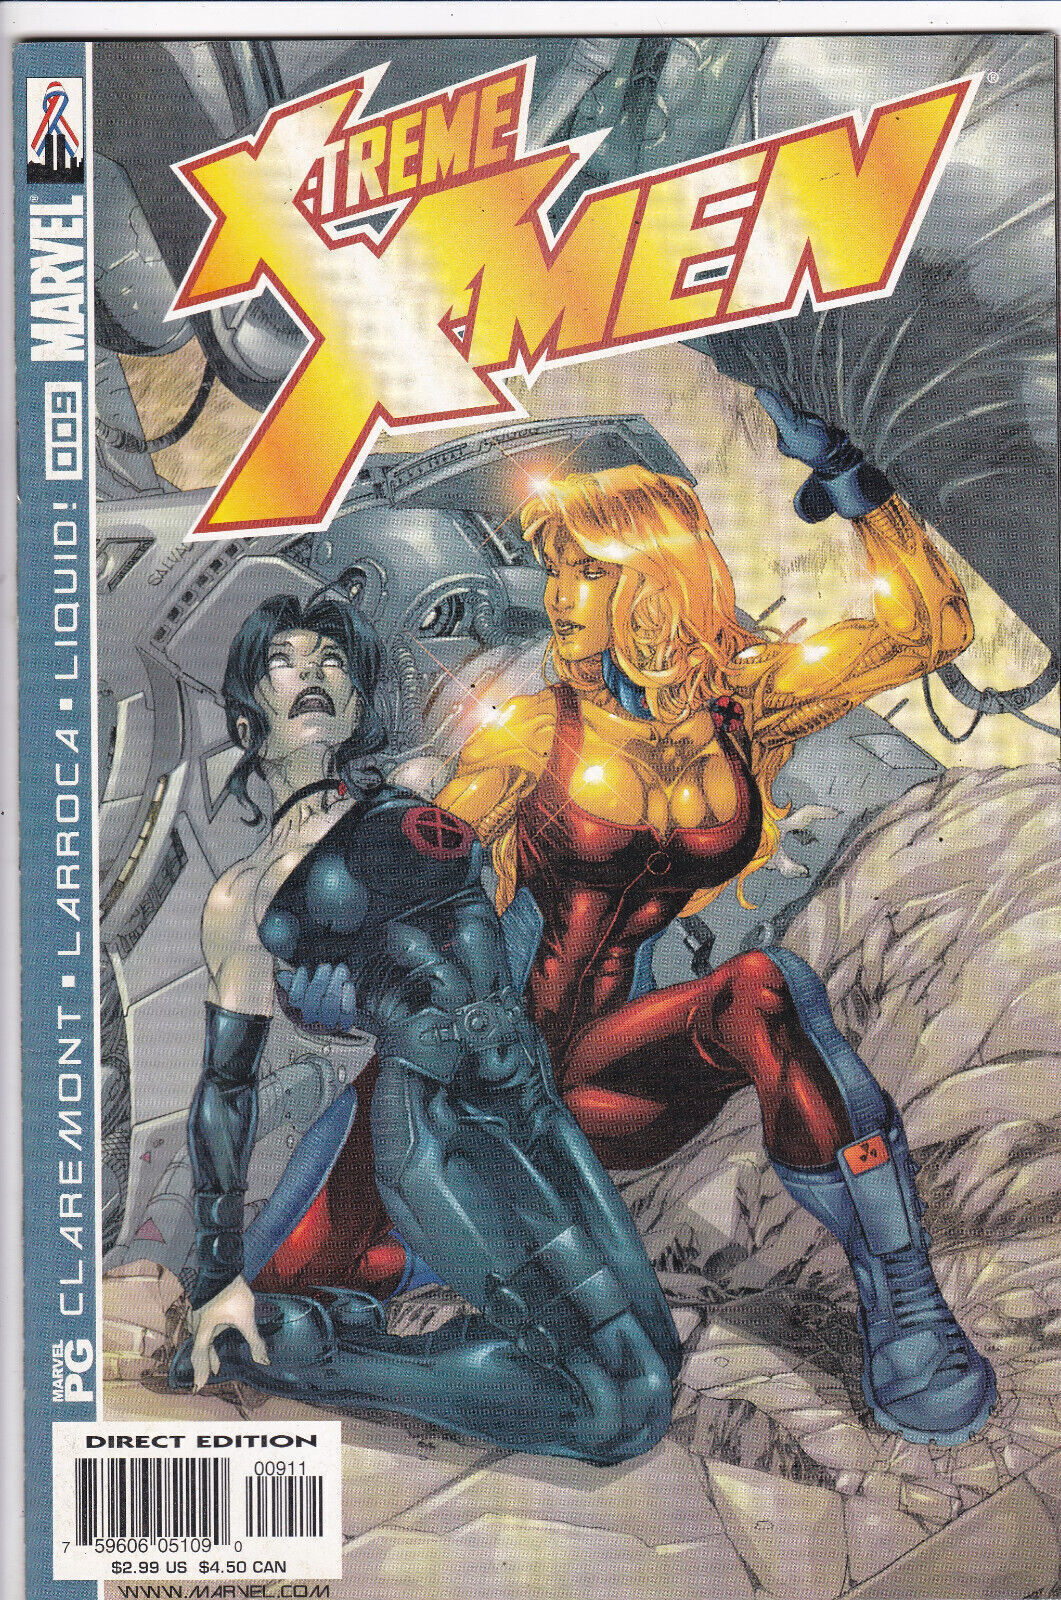 X-Treme X-Men #9, Vol. 1 (2001-2004) Marvel Comics